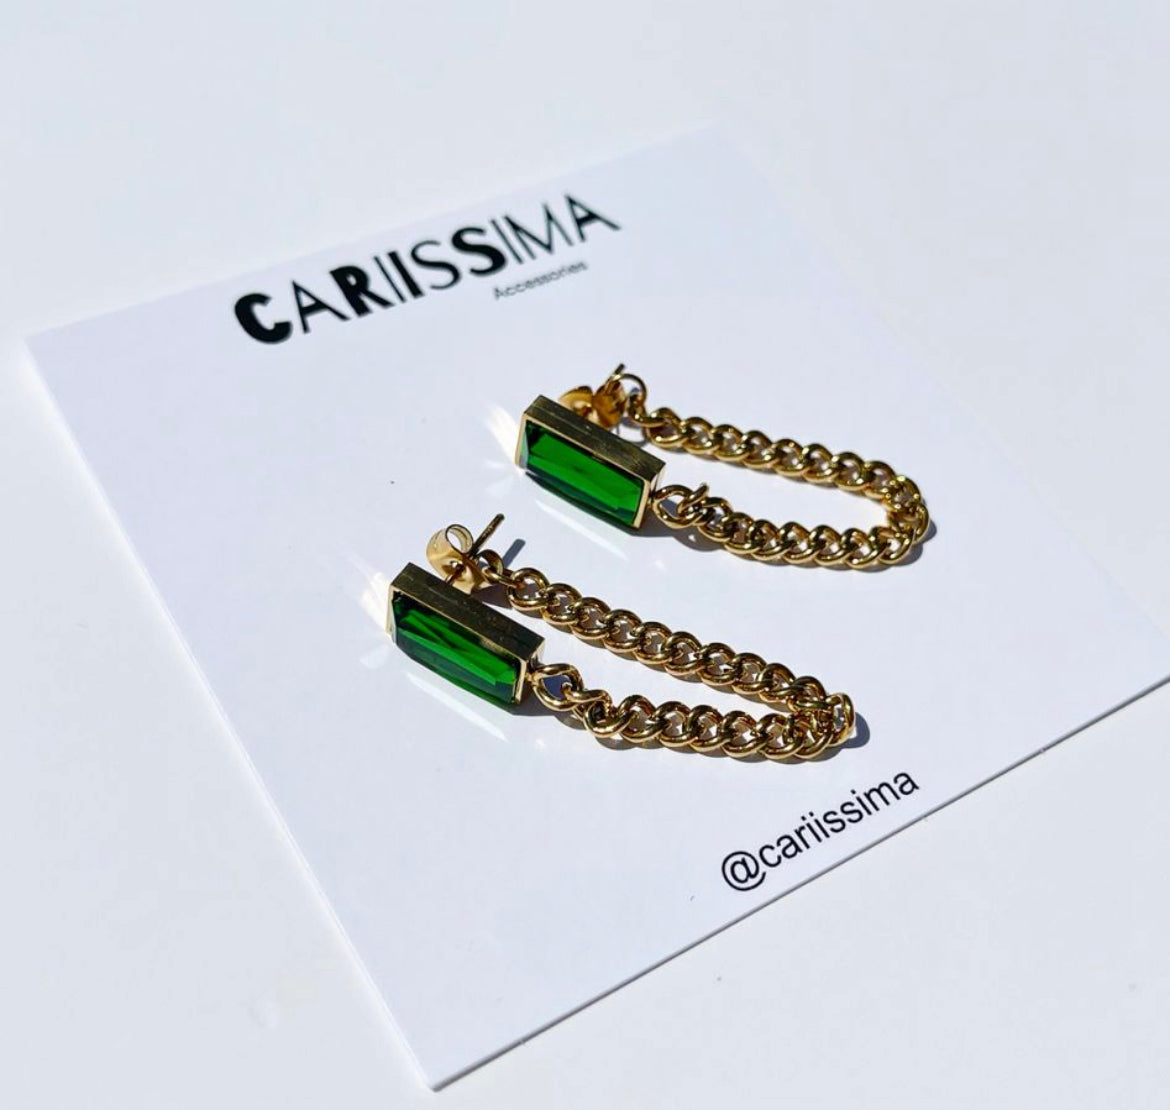 Green & Gold Earrings